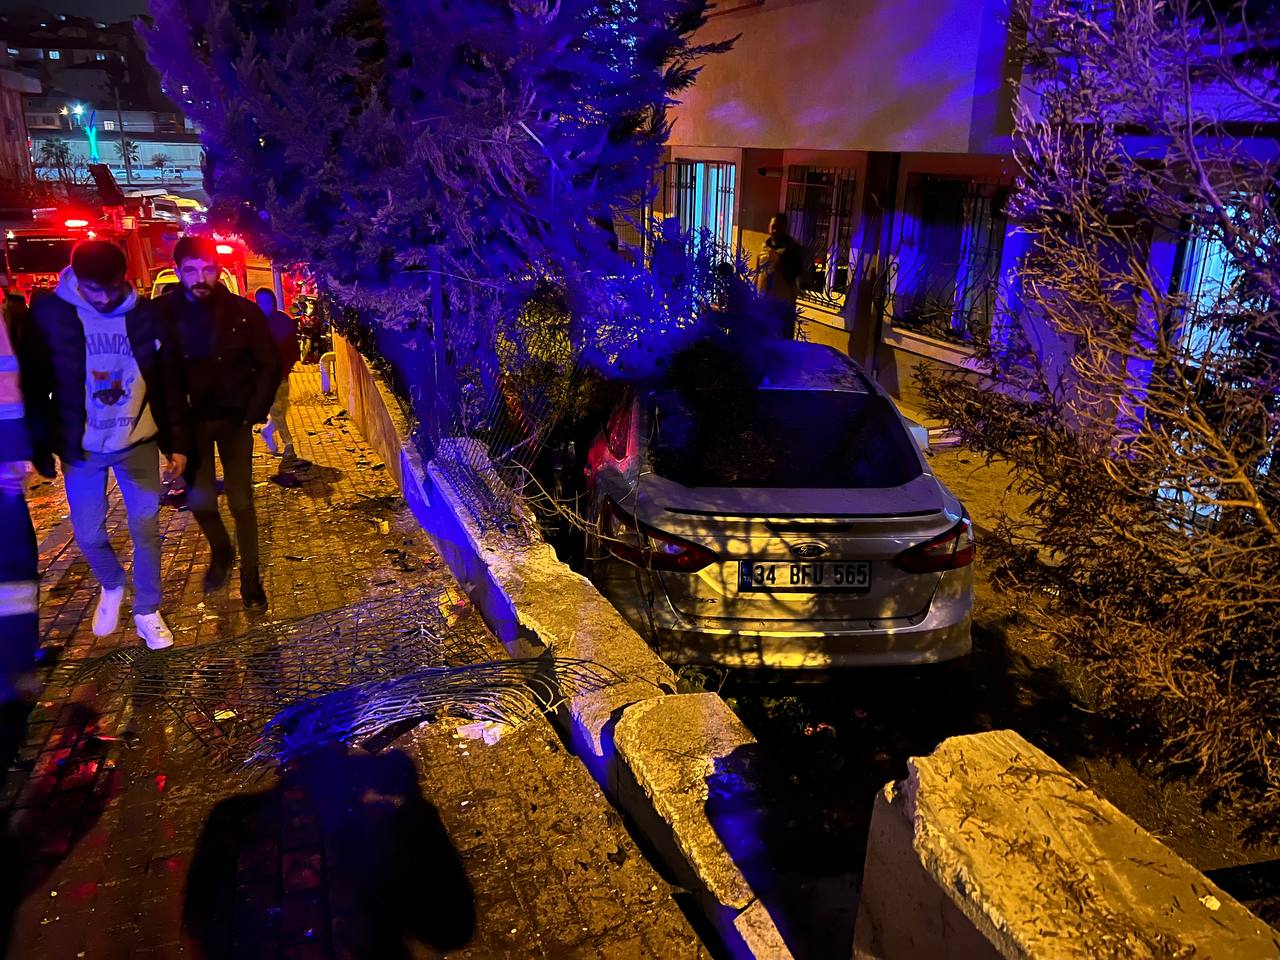 Kocaeli’nin Gebze ilçesinde, 4 aracın karıştığı trafik kazasında 2 kişi yaralandı.